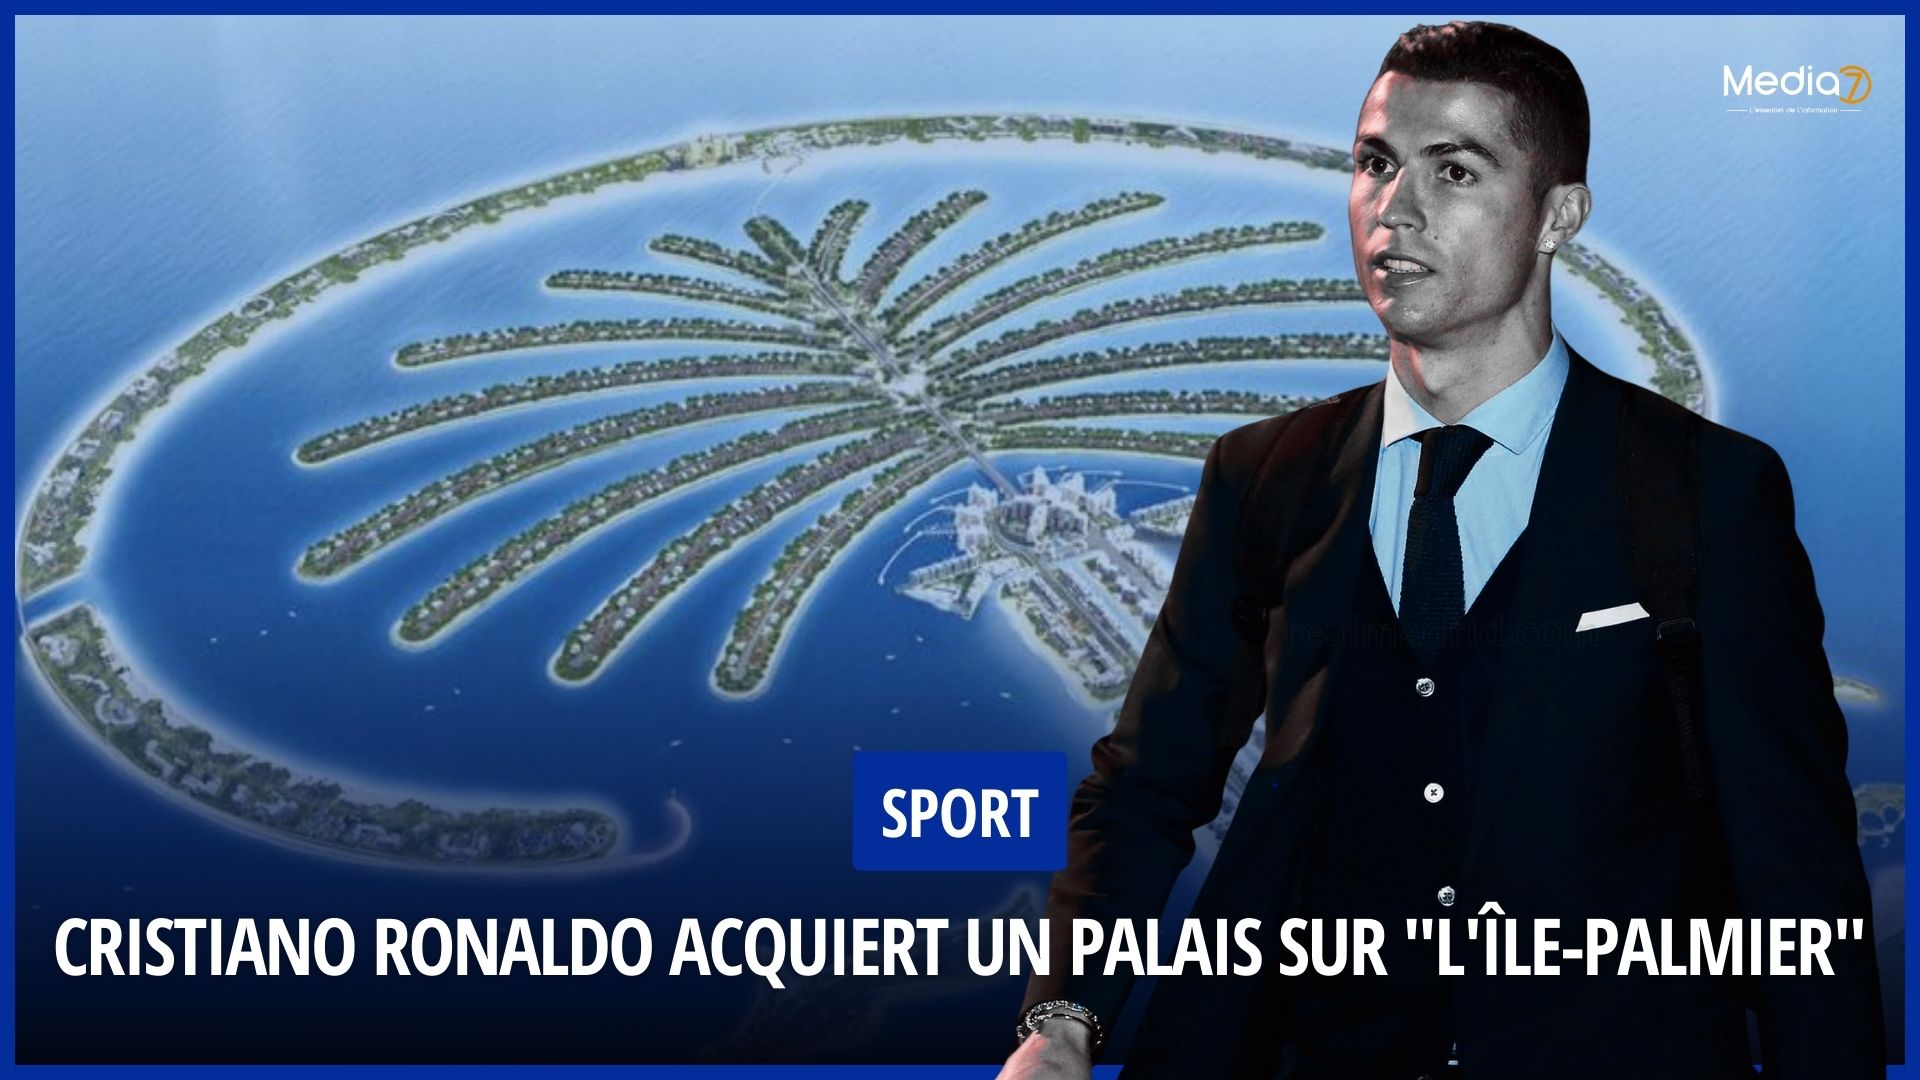 Cristiano Ronaldo Acquiert un Palais sur "L'île-Palmier" à Dubaï